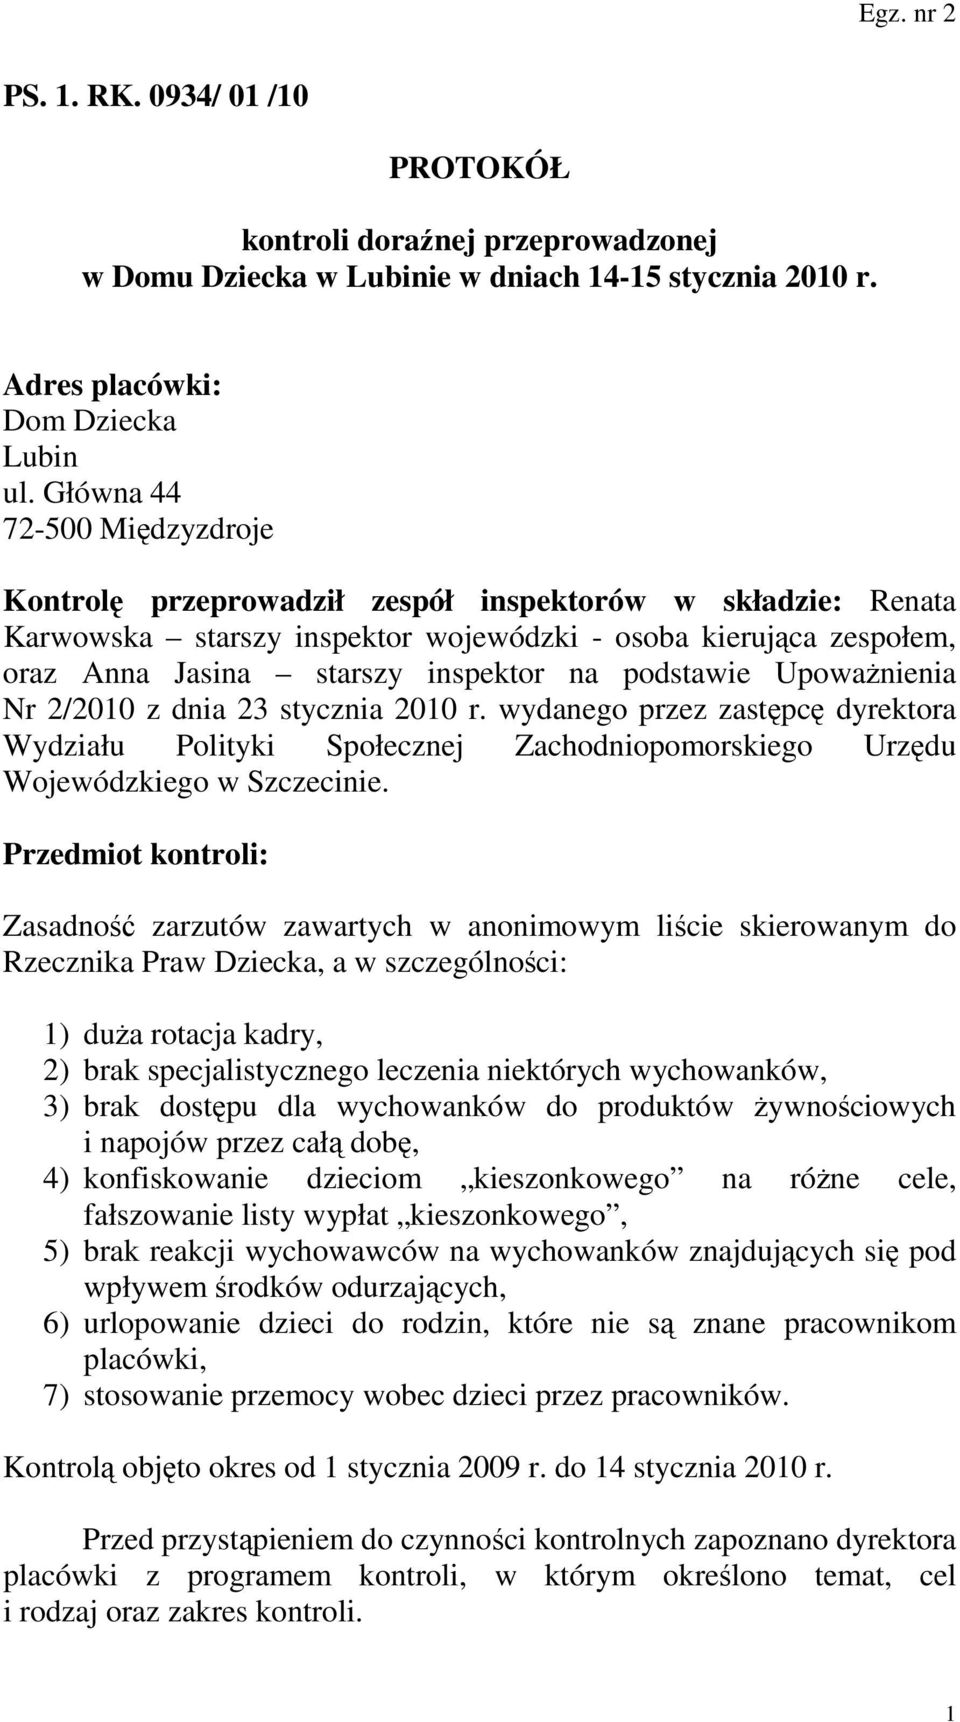 podstawie UpowaŜnienia Nr 2/2010 z dnia 23 stycznia 2010 r. wydanego przez zastępcę dyrektora Wydziału Polityki Społecznej Zachodniopomorskiego Urzędu Wojewódzkiego w Szczecinie.